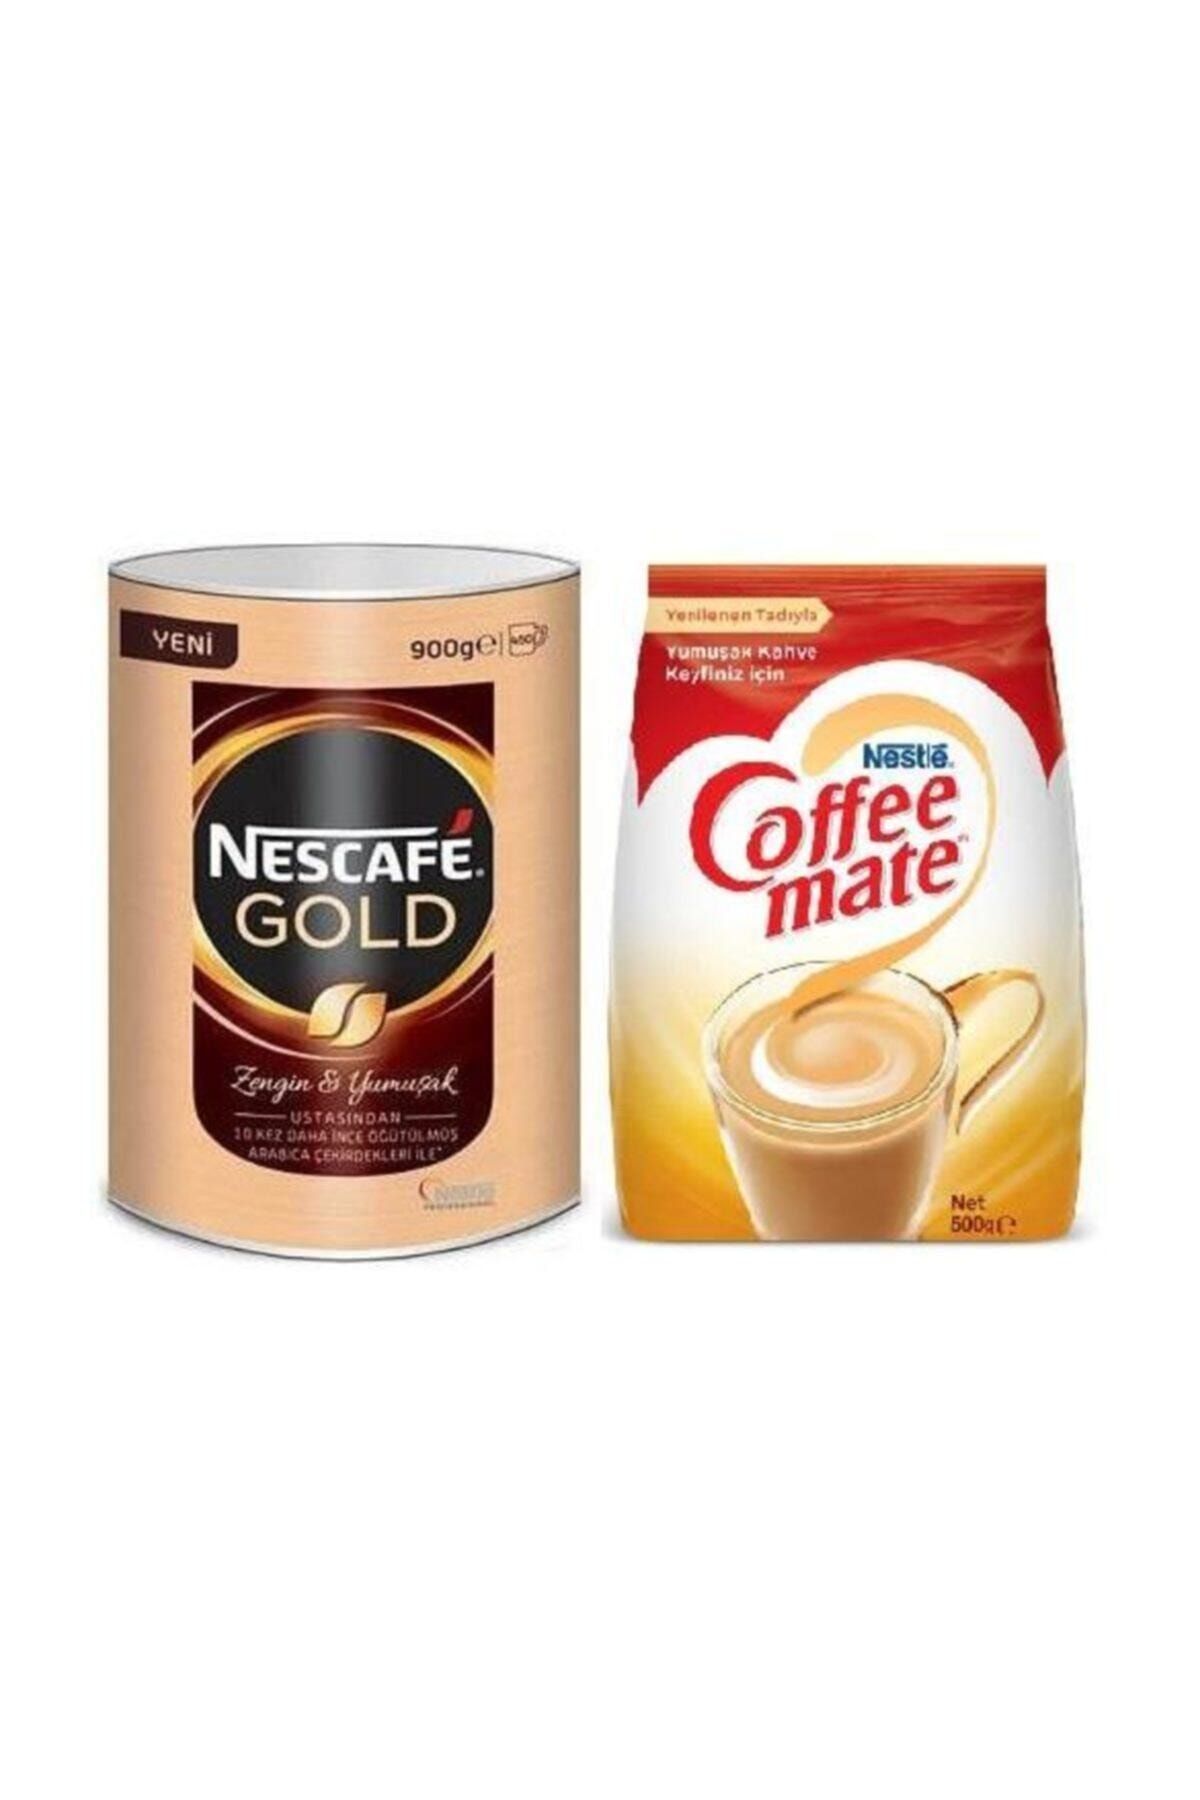 Nescafe Gold Kahve 900g + Coffe Mate 500g.